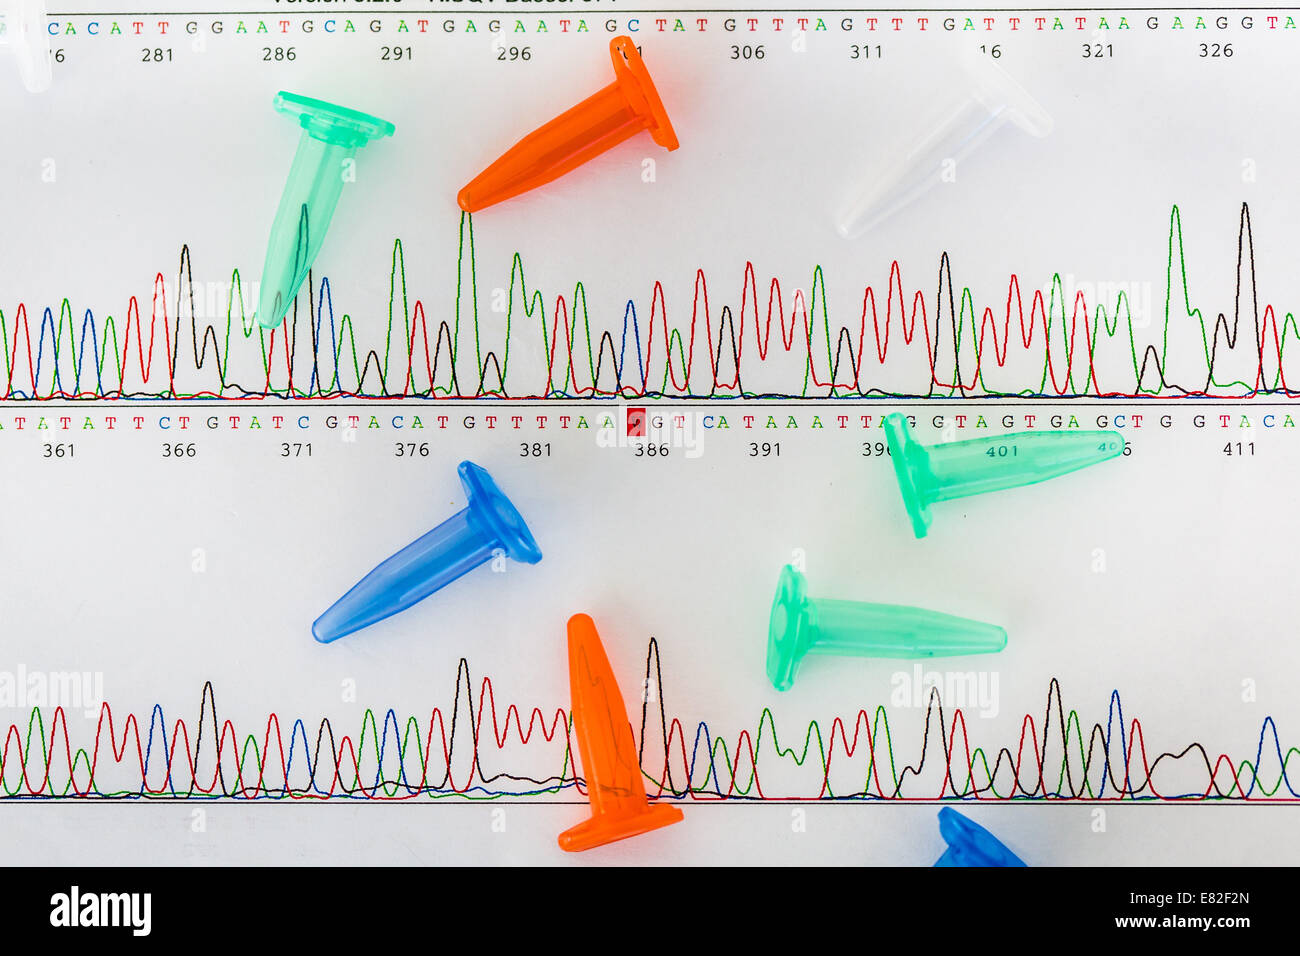 Tubos Eppendorf de gráficos que muestran los resultados del ADN (ácido desoxirribonucleico) secuenciación. Foto de stock